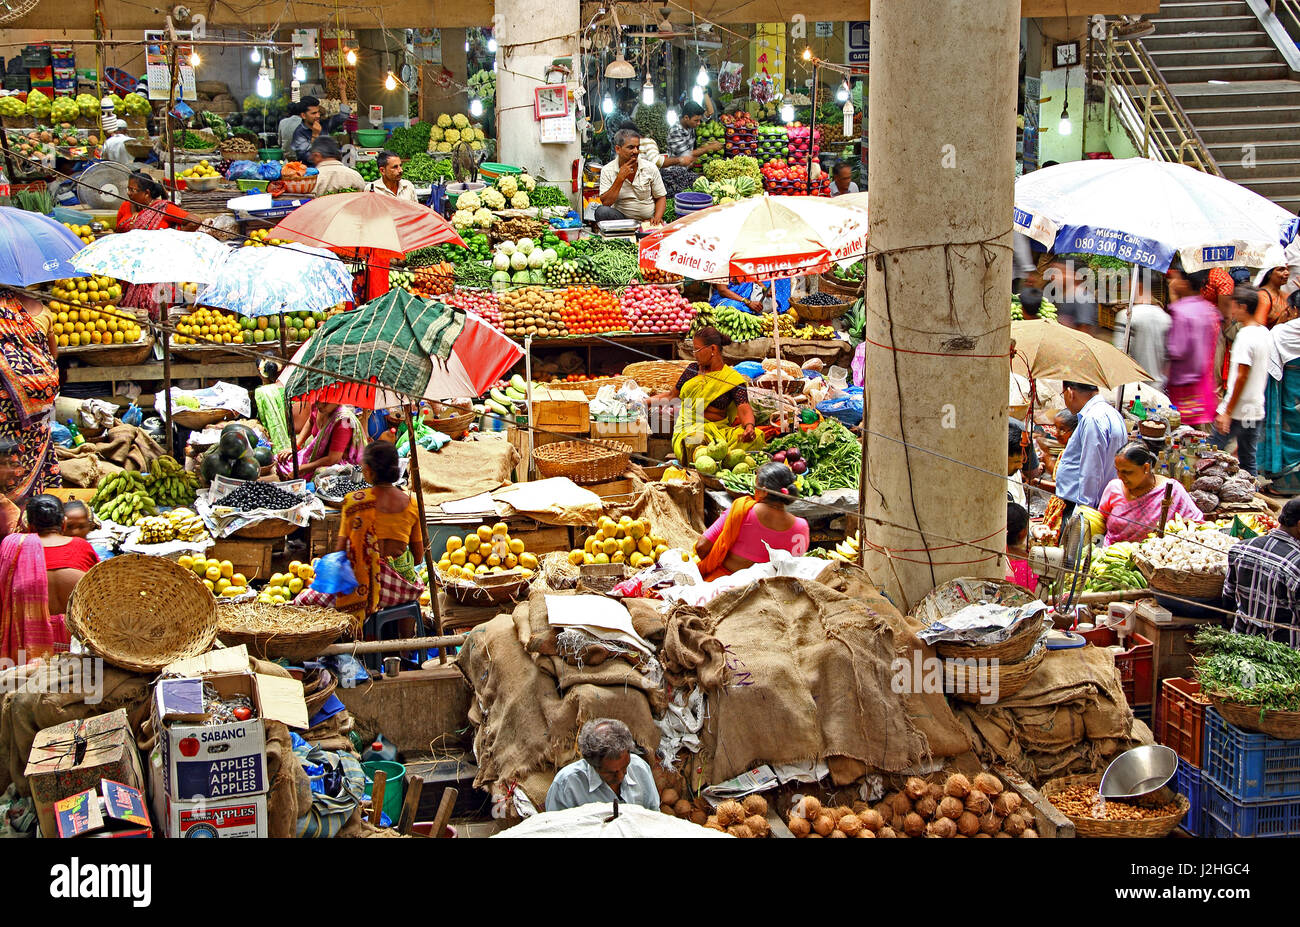 Kreditoren und Debitoren Handel auf Obst und Gemüse Tagesmarkt in Panjim, Goa, Indien. Nur zu redaktionellen Zwecken Stockfoto